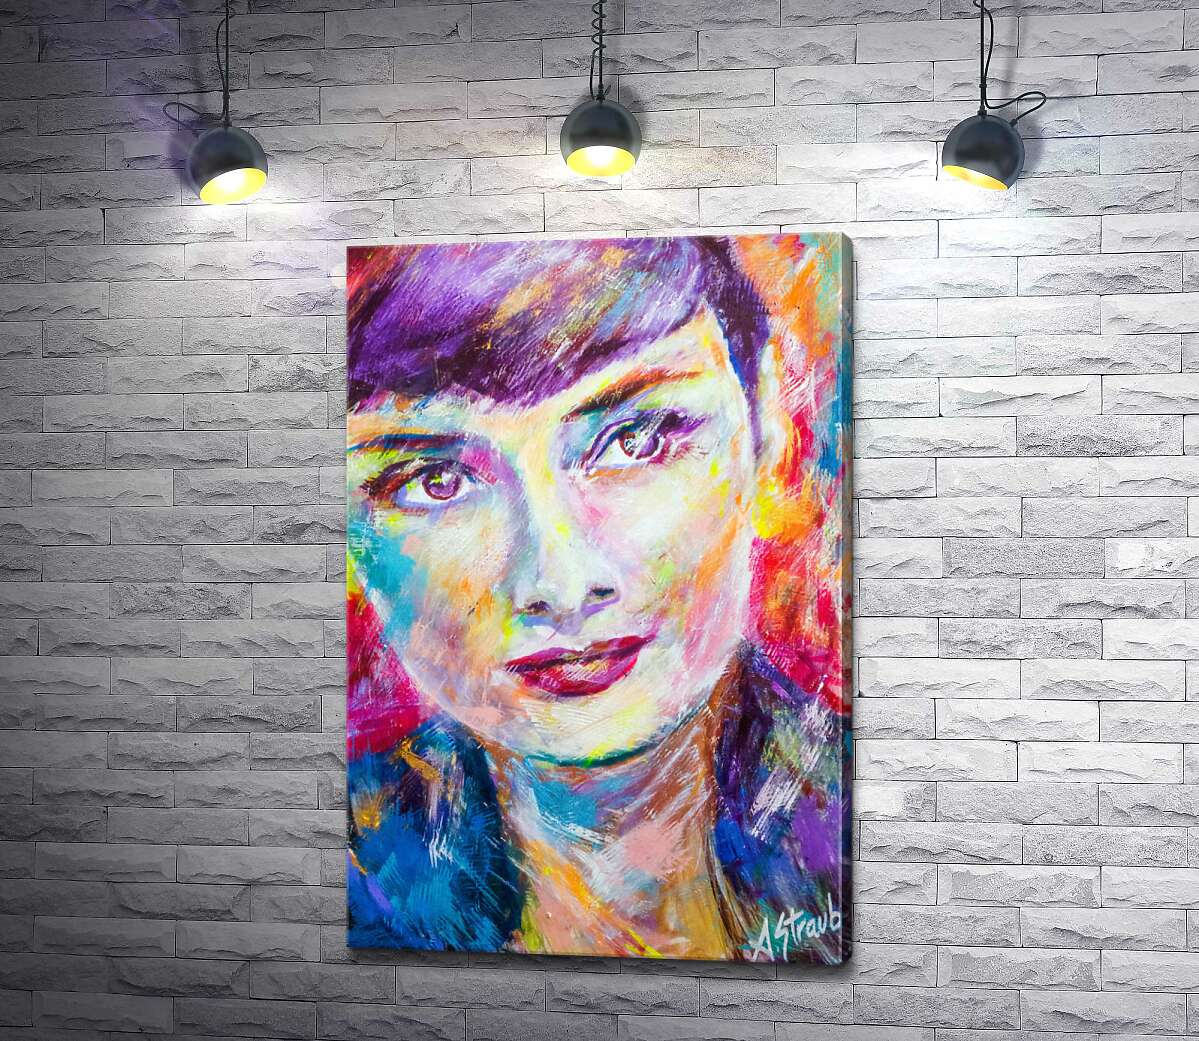 картина Сочетание красок на портрете Одри Хэпберн (Audrey Hepburn)